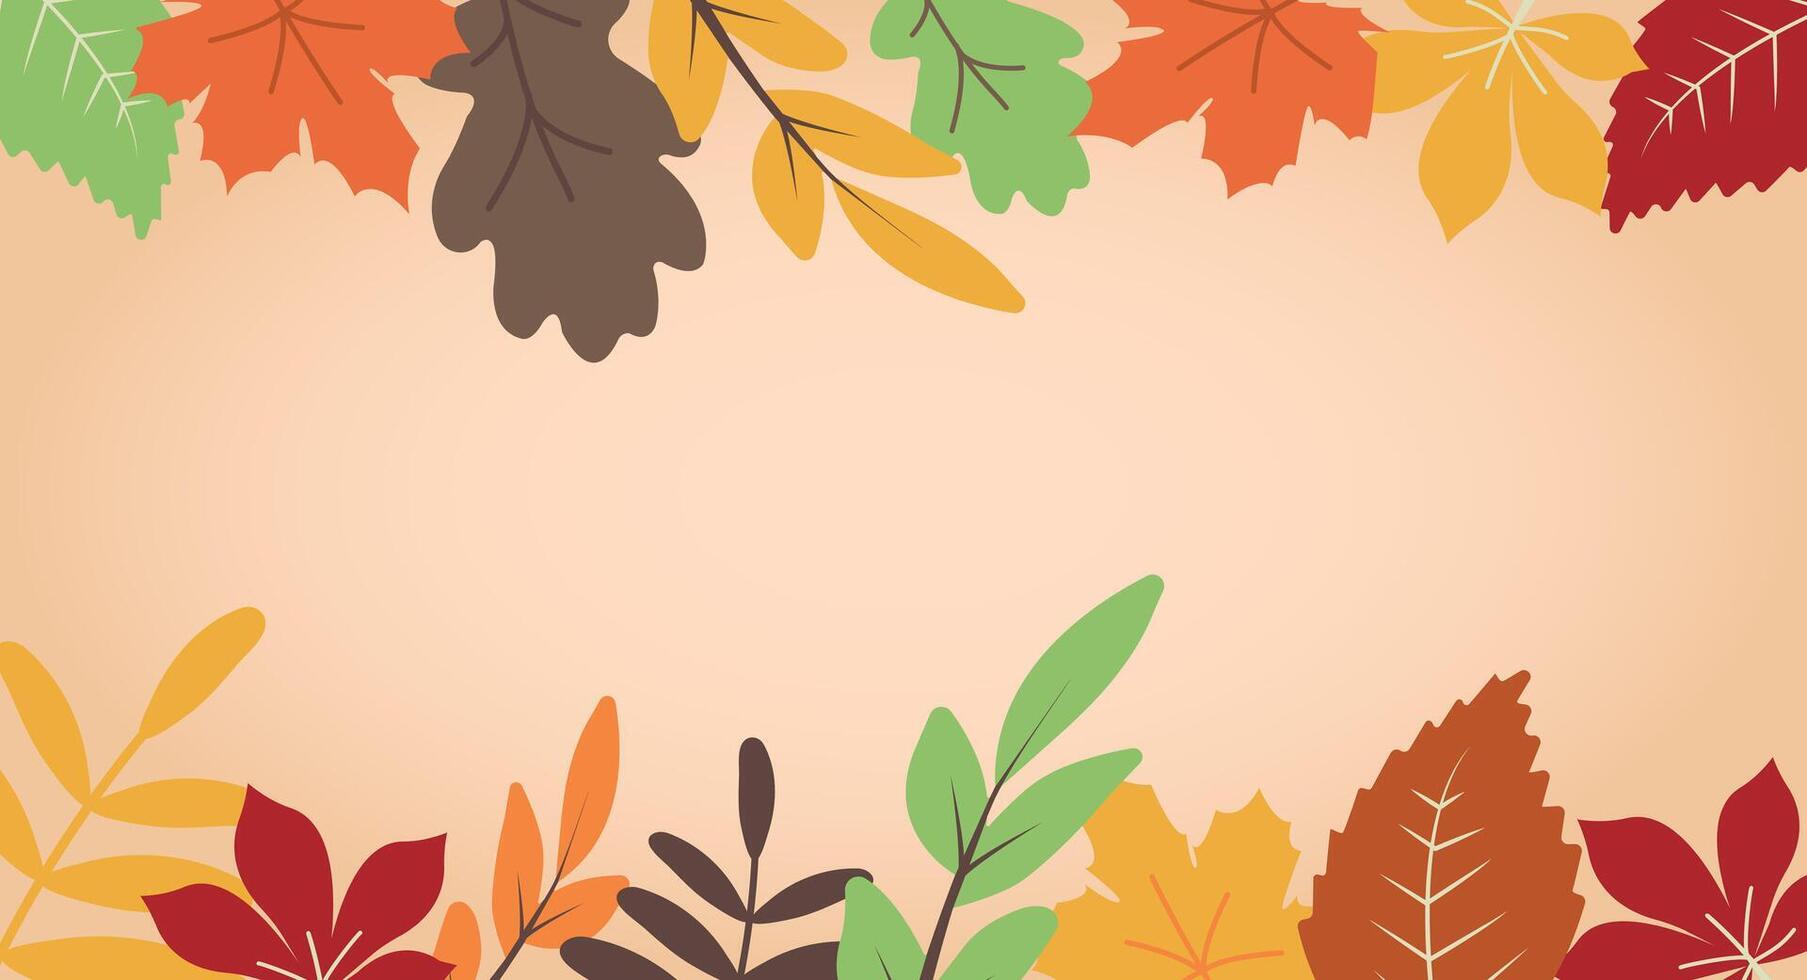 abstract herfst achtergrond met herfst bladeren. gekleurde elementen voor ontwerp decoratief in de herfst festival, kop, banier, web, muur decoratie, kaarten. achtergrond illustratie. vector